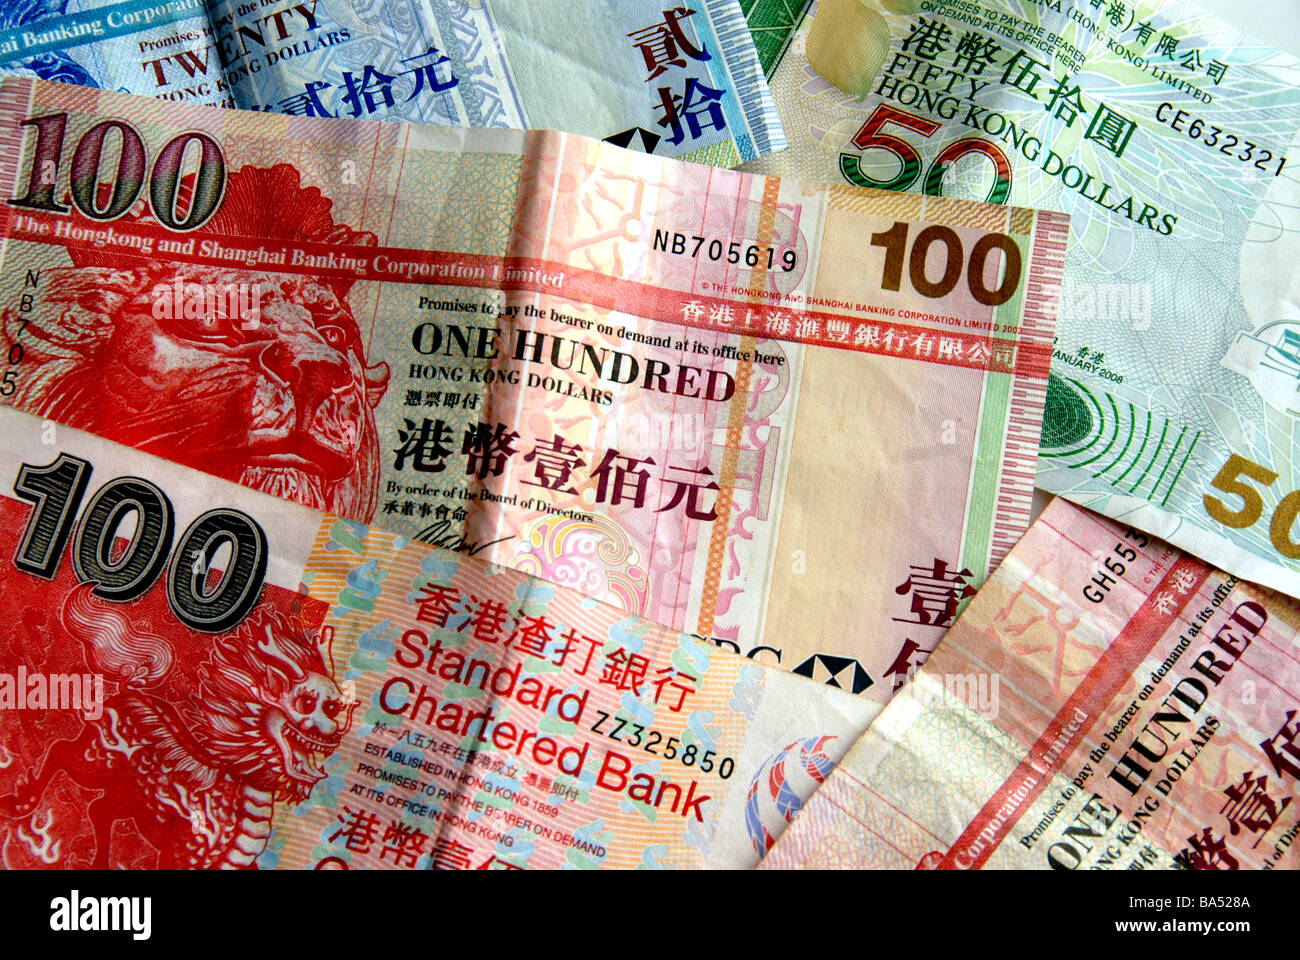 notes of hong kong dollars Stock Photo